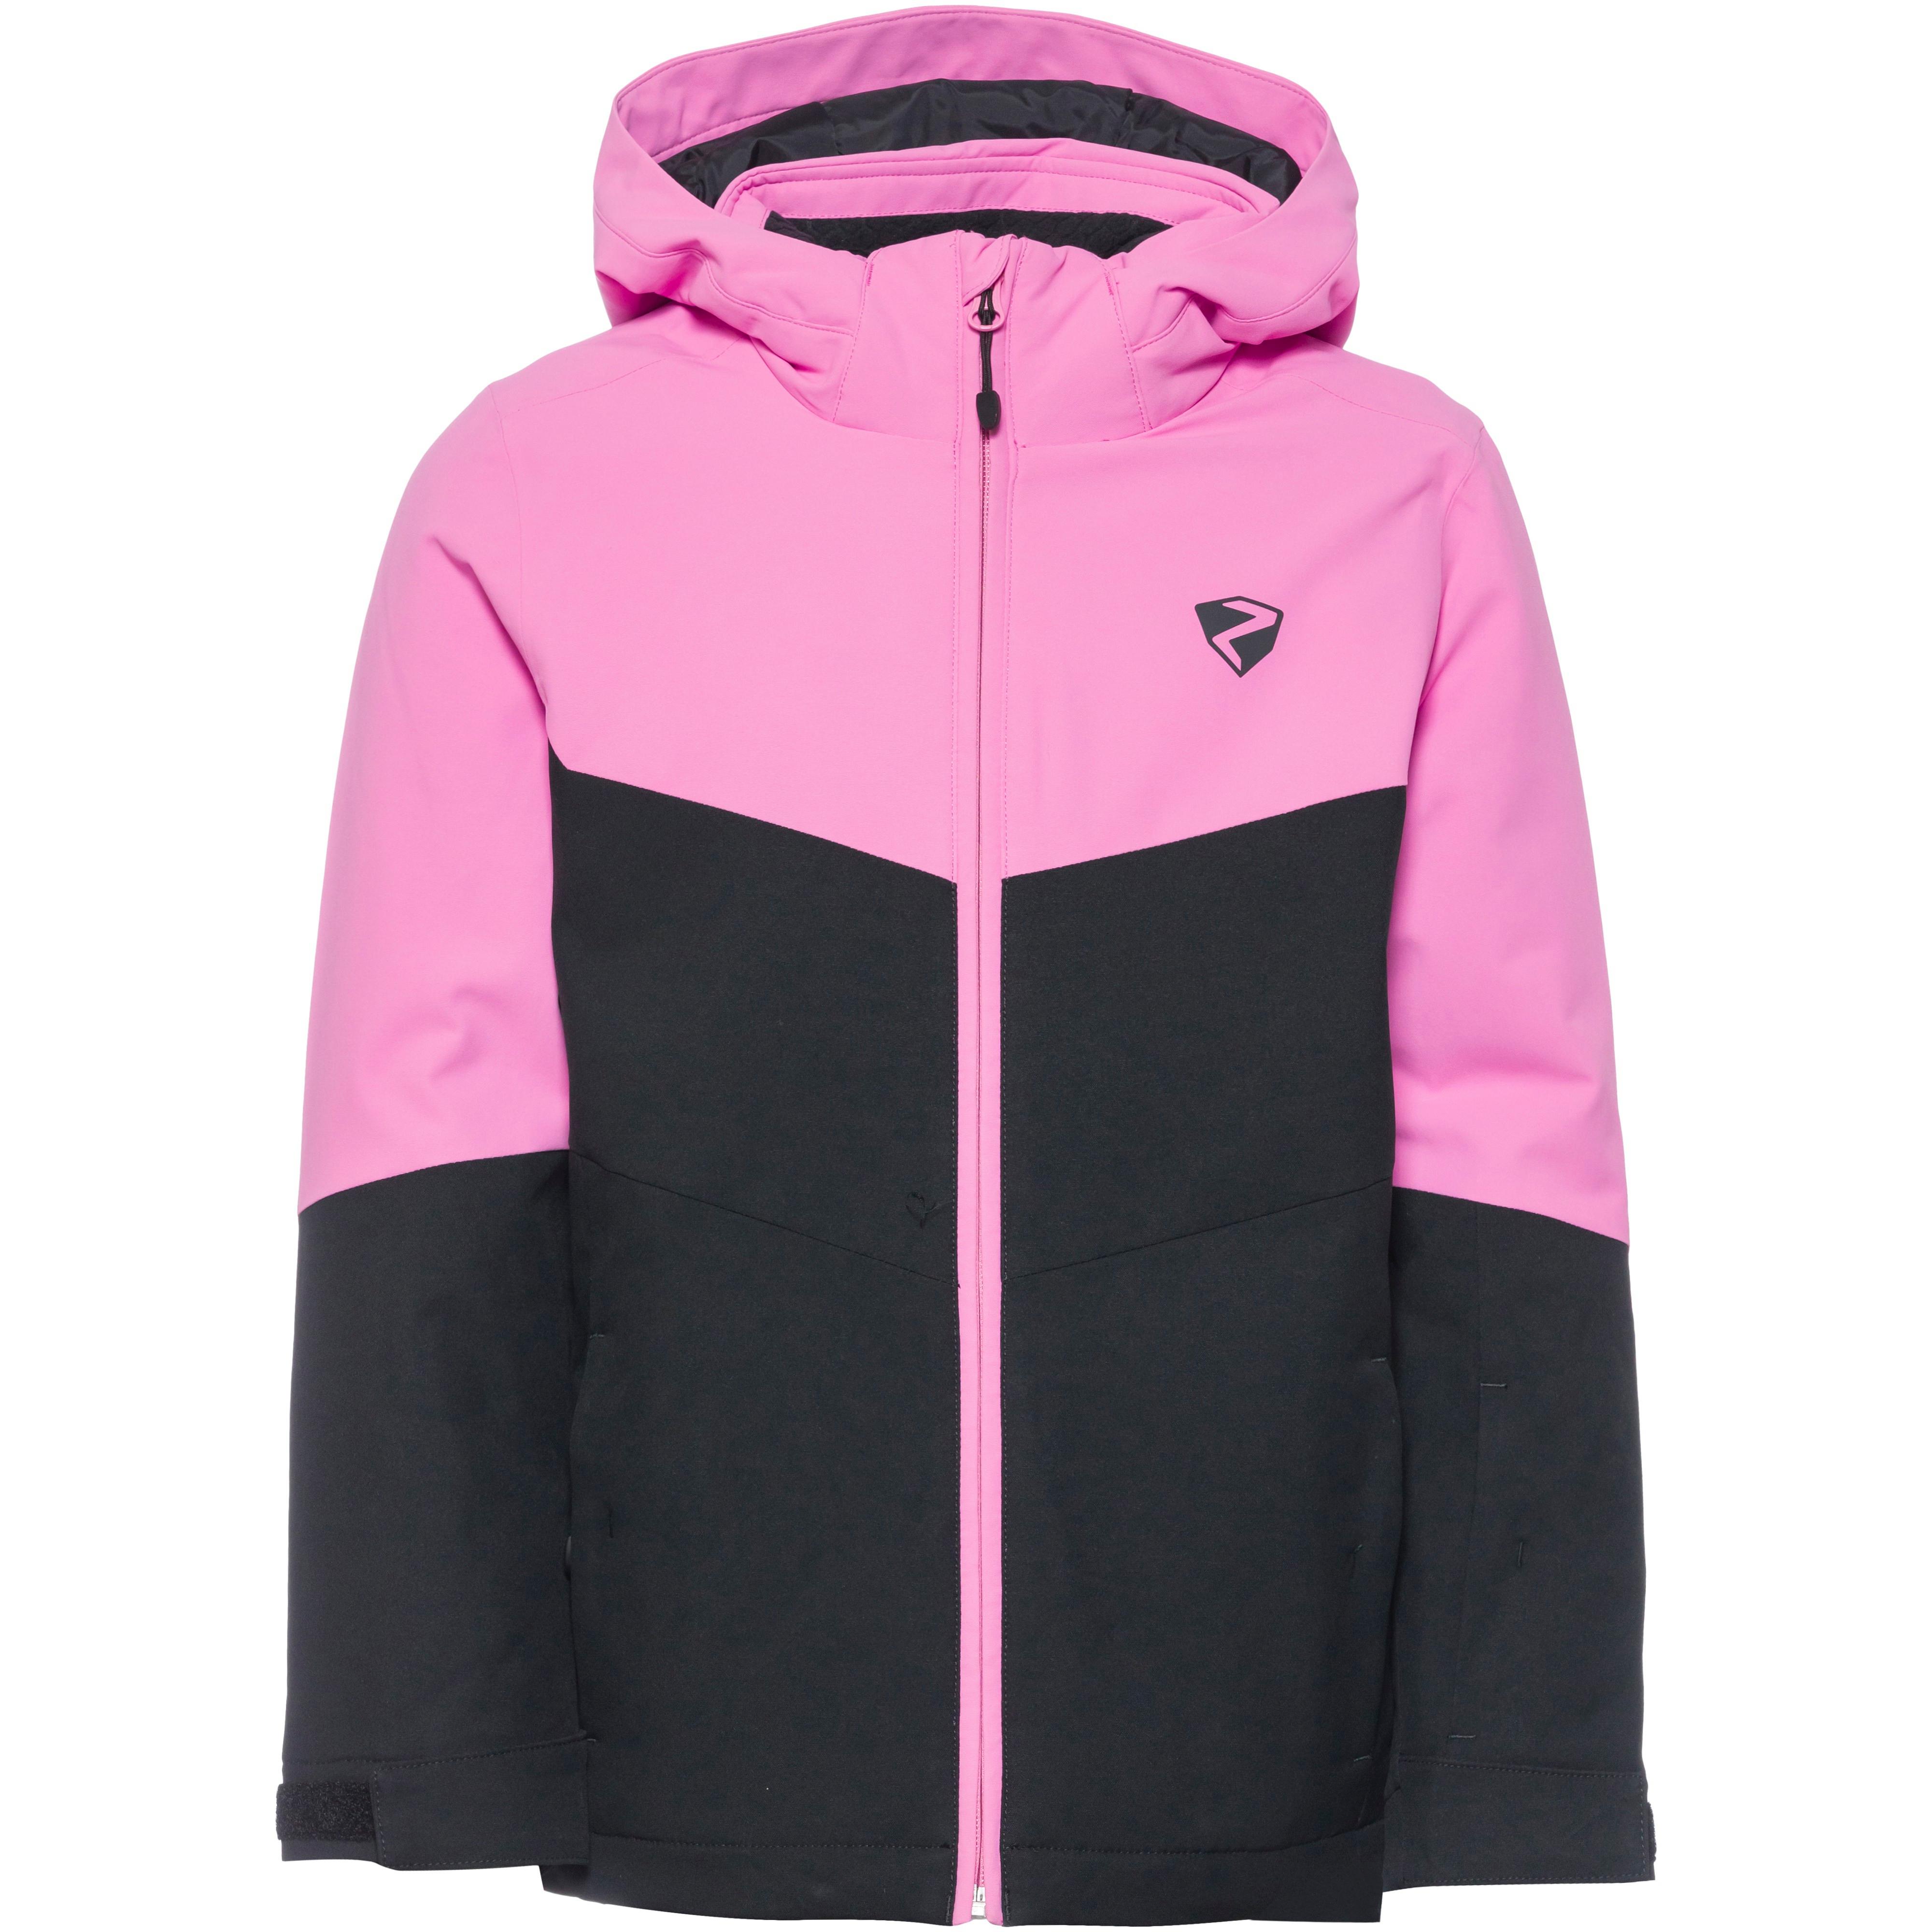 Kleidung von Ziener SportScheck kaufen Online Shop rosa im von in